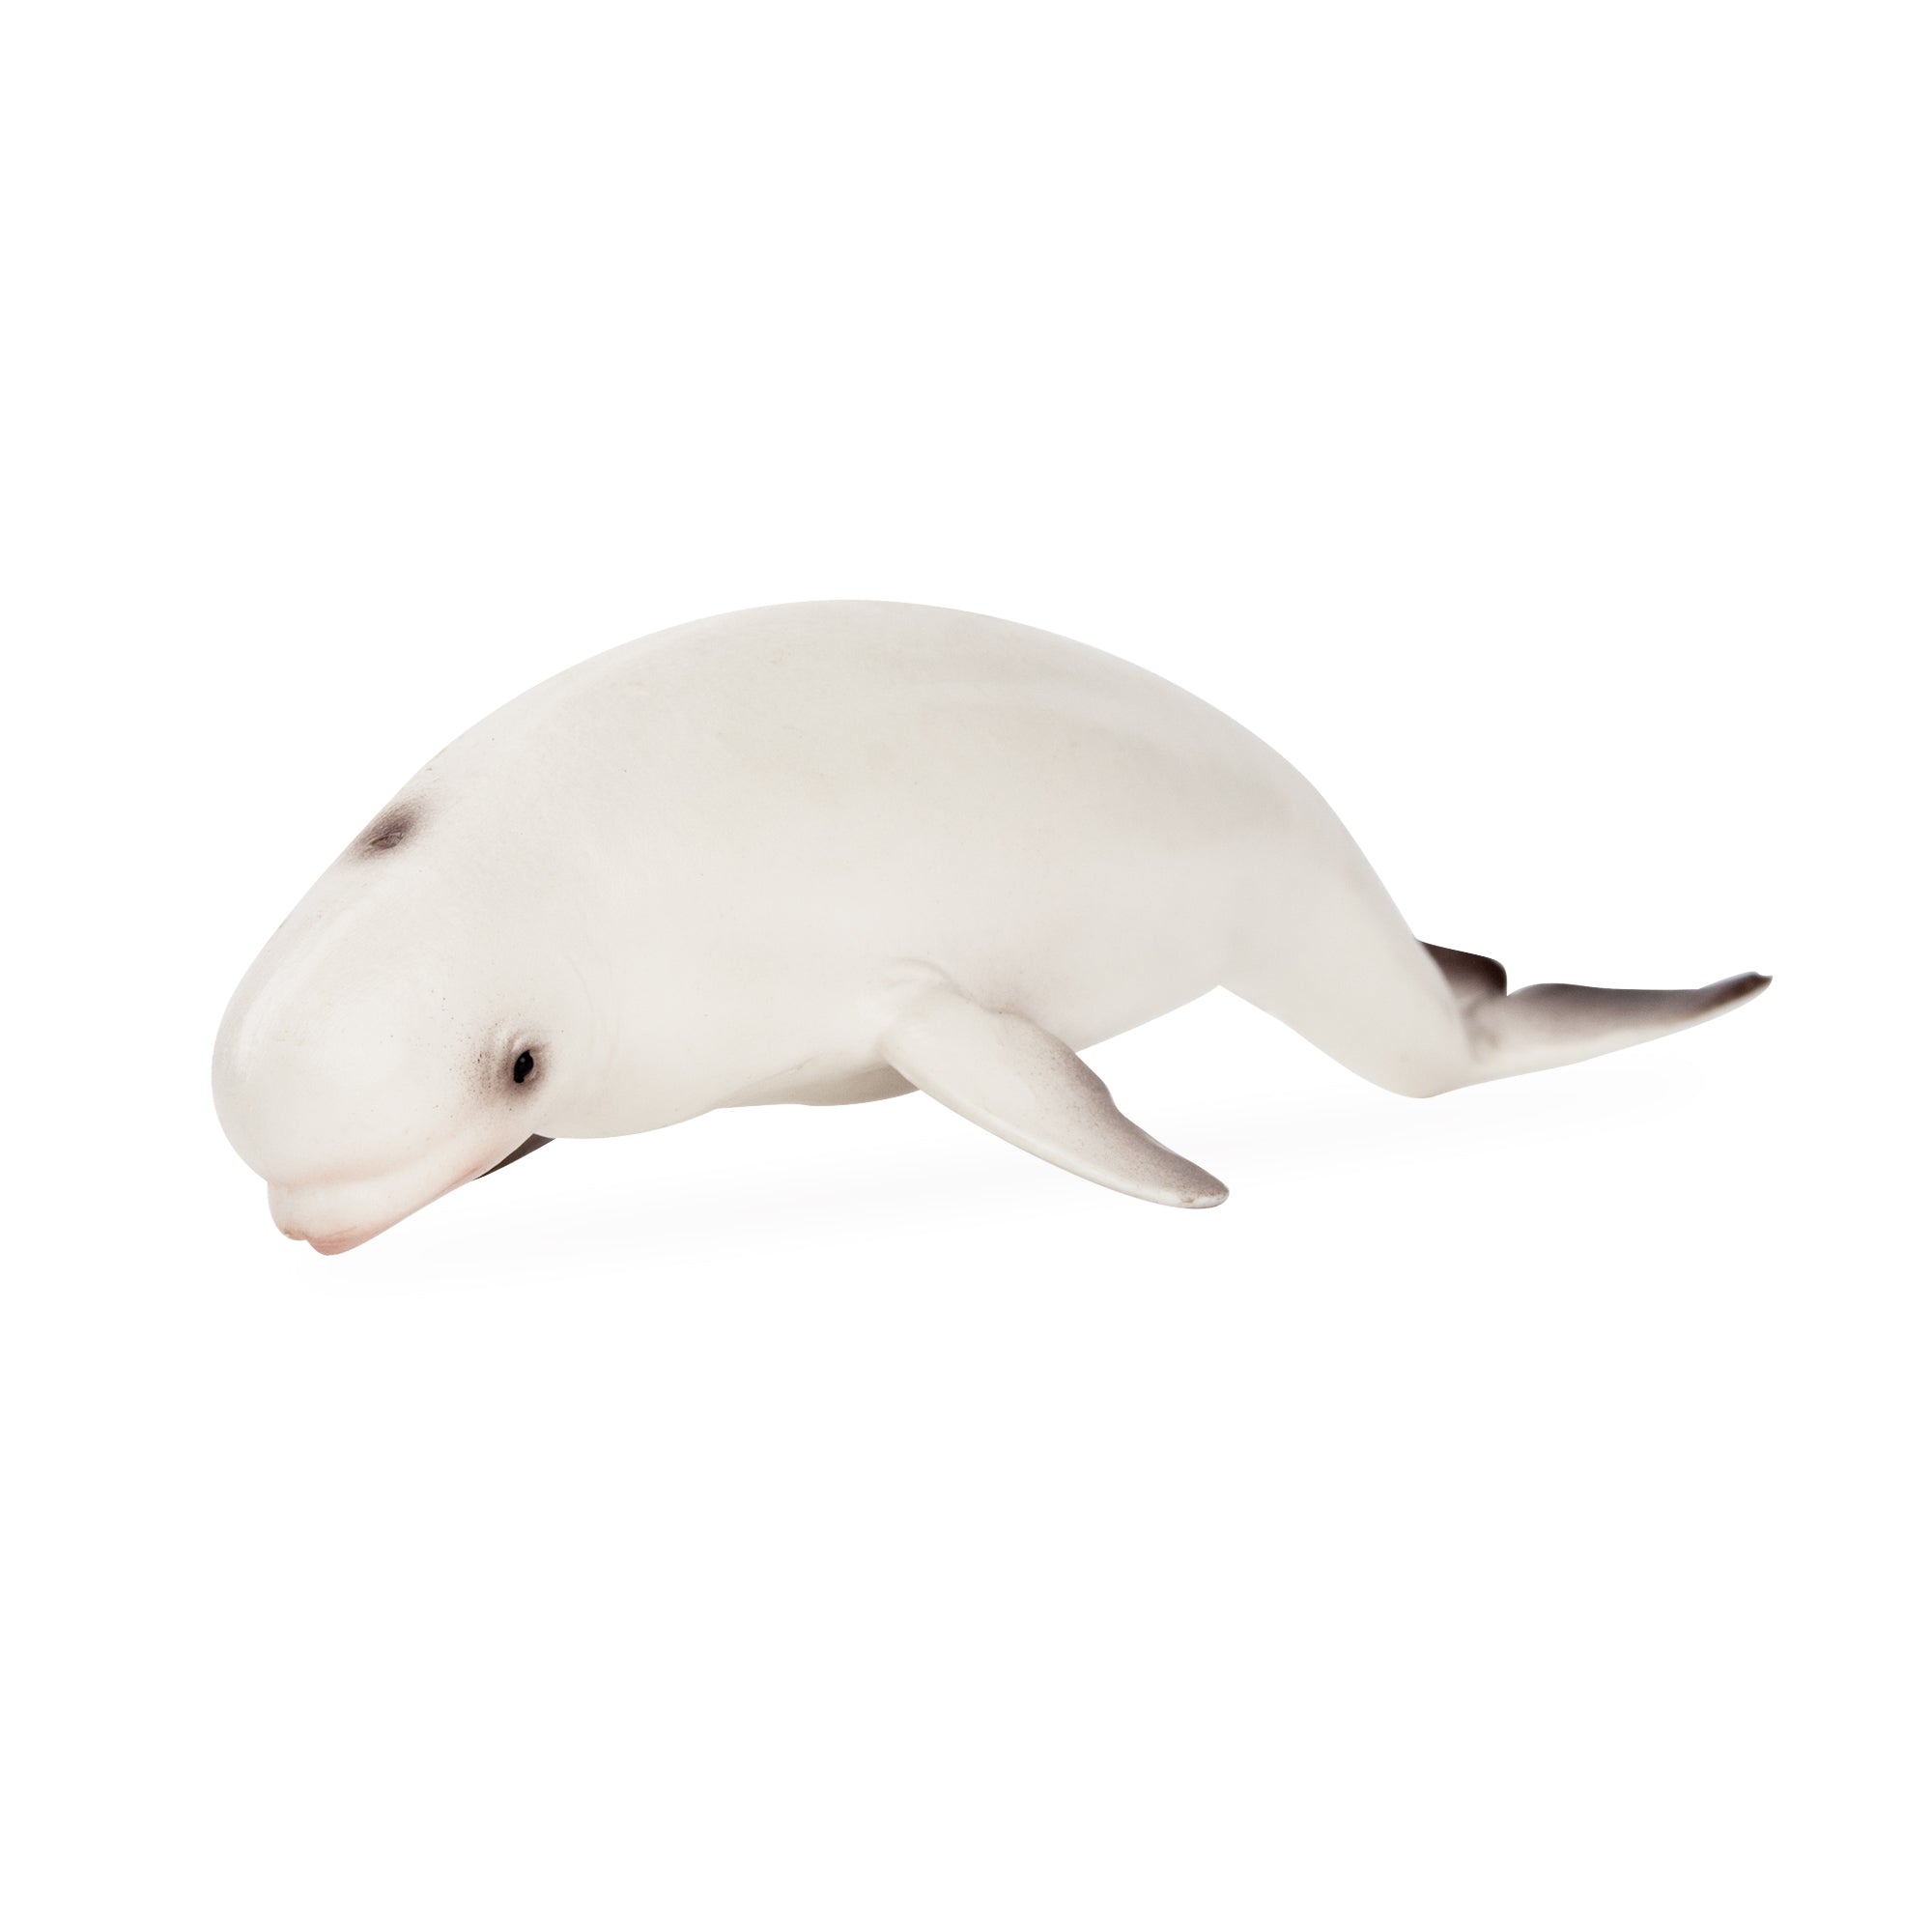 Toymany Beluga Whale Figurine Toy-2